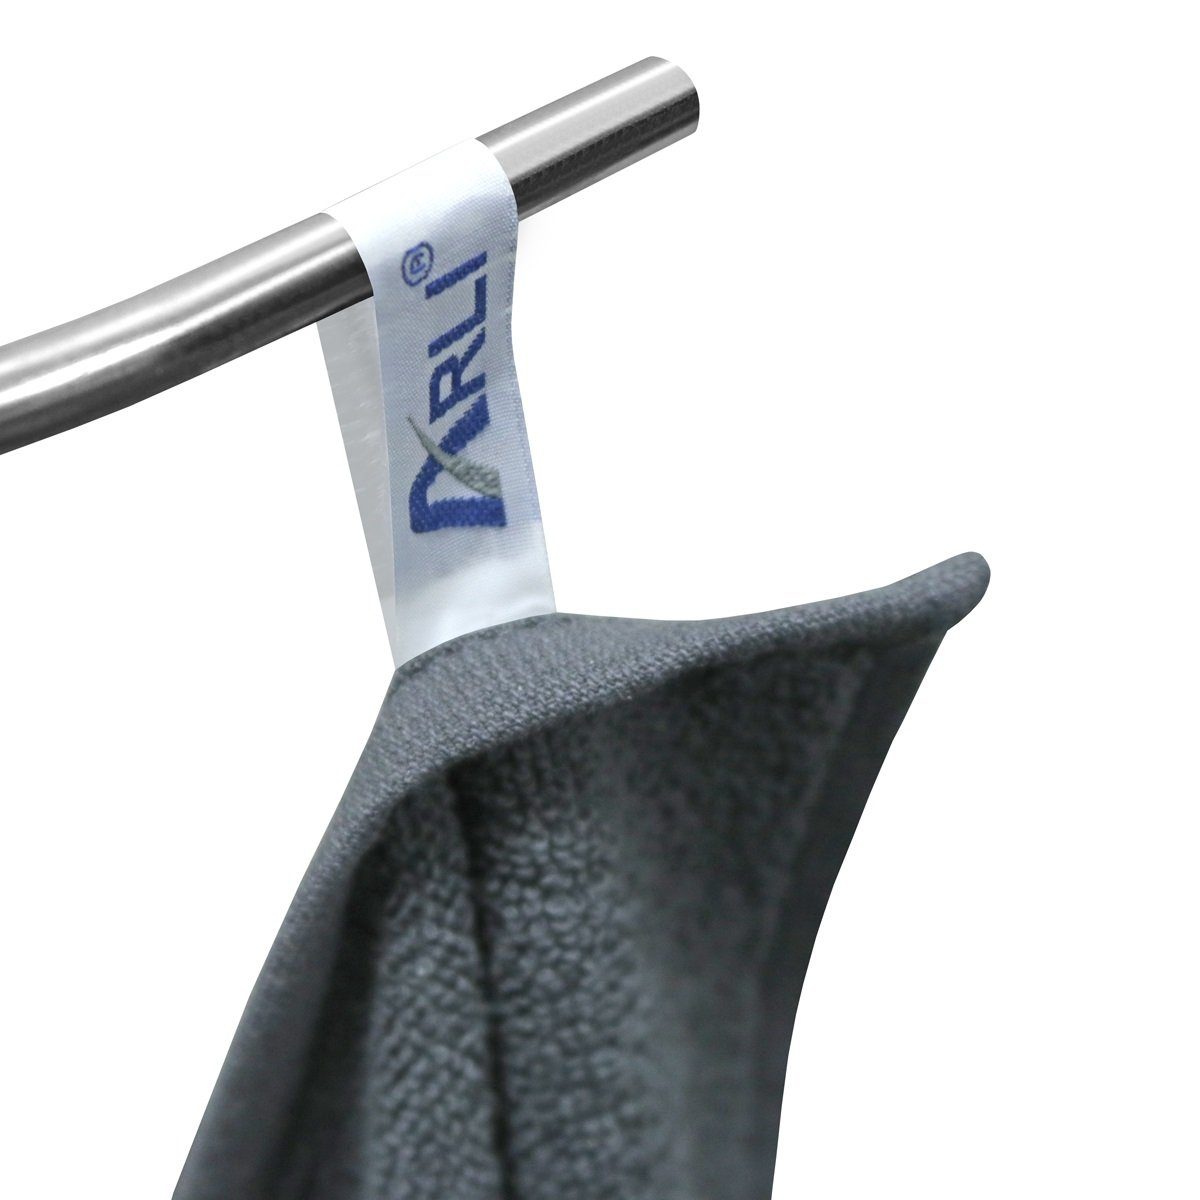 ARLI Handtuch Set elegant Set Handtuchaufhänger, 4 4 x Baumwolle weiß Serie 100% aus praktisch schwarz (8-tlg) modern Rohstoff Handtücher Handtuch schlicht mit klassischer 8 hochwertigem Frottier Design